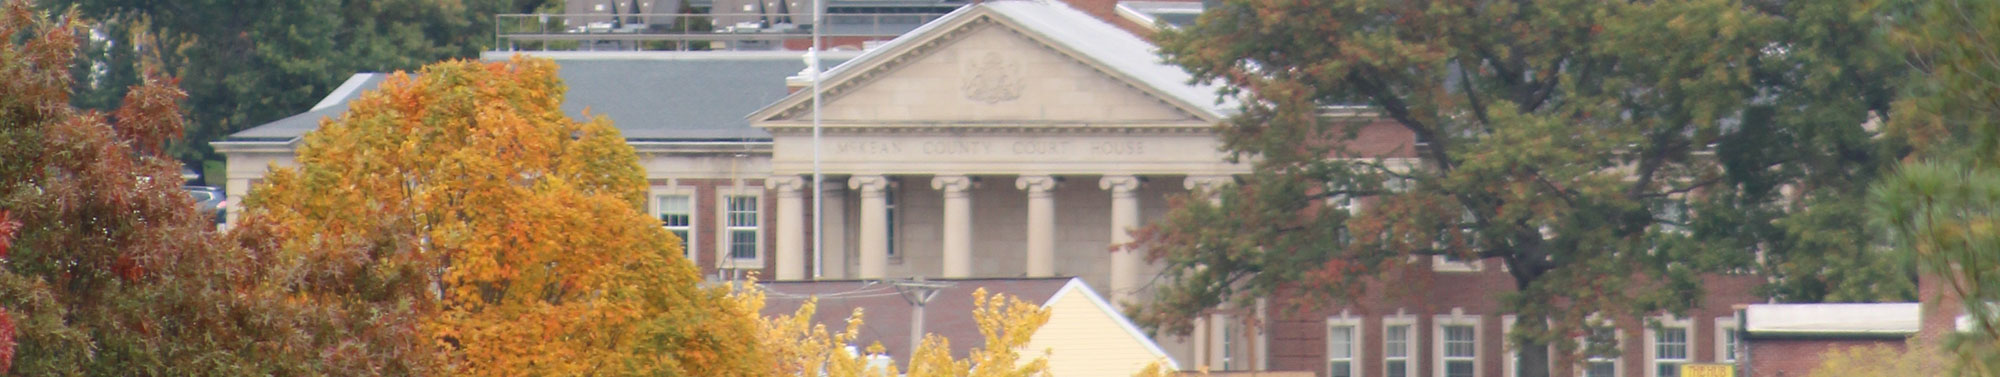 Front of school building